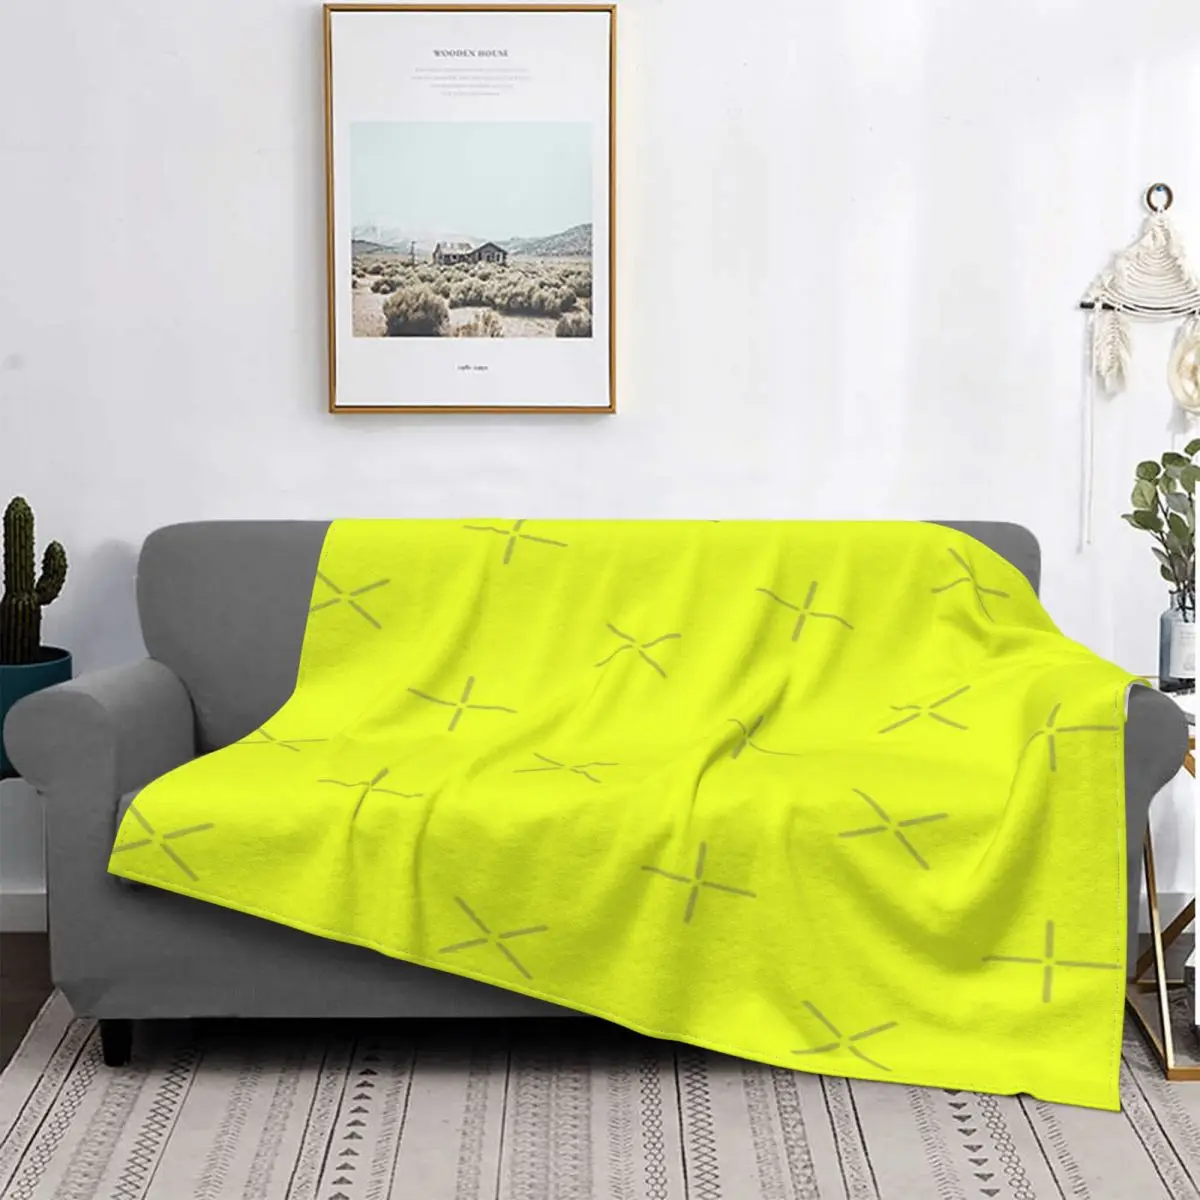 

Manta de Color liso con capucha para el hogar, colcha de tela escocesa para el sofá, Color amarillo y verde, para invierno